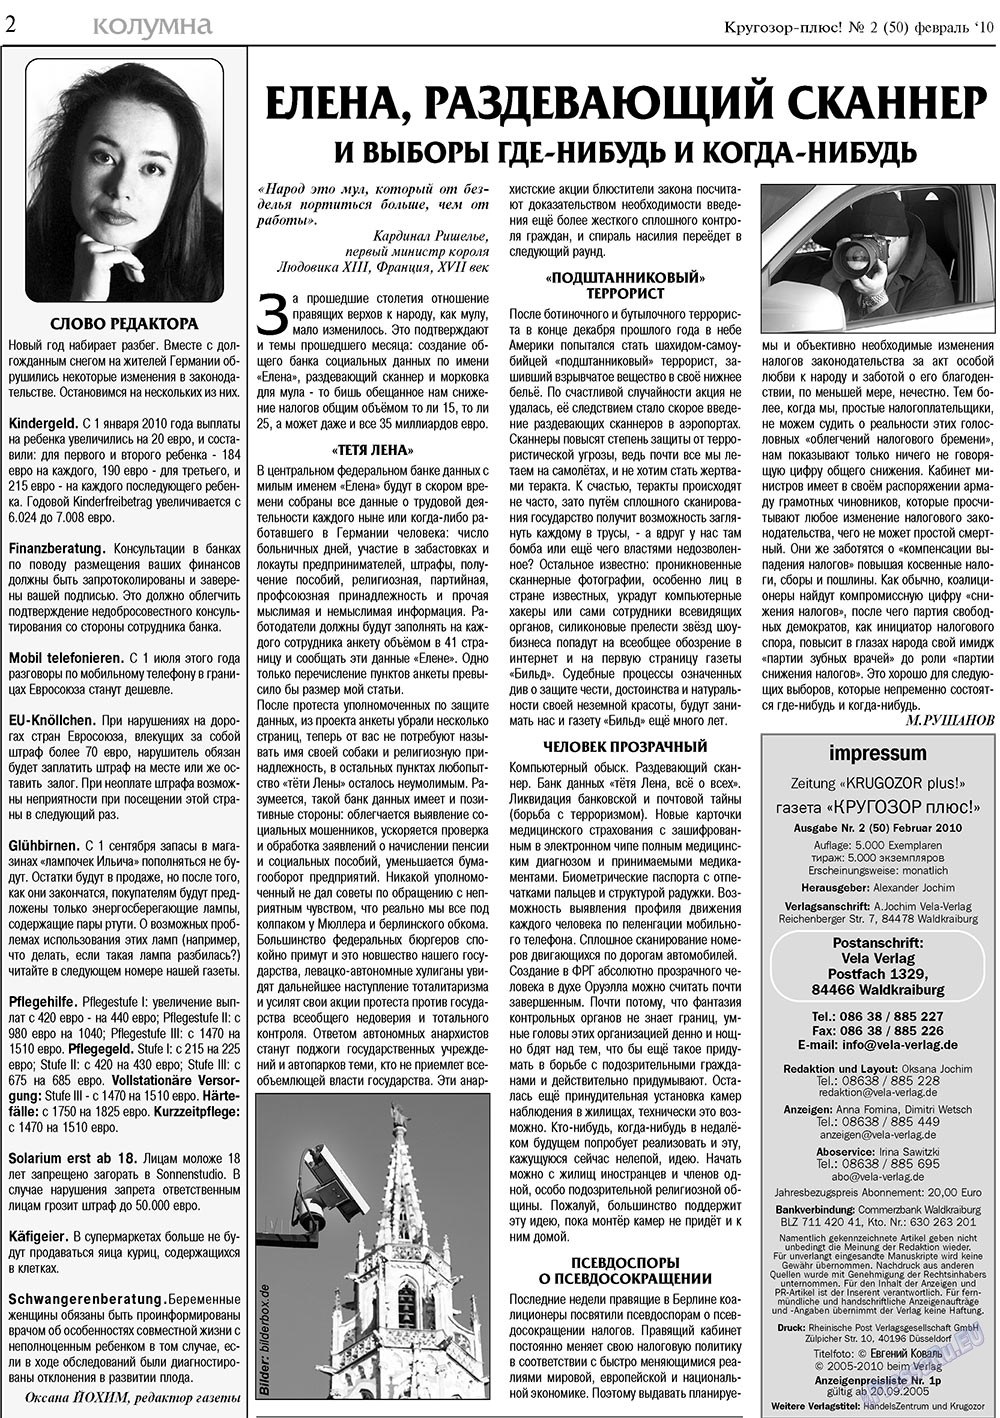 Кругозор плюс!, газета. 2010 №2 стр.2